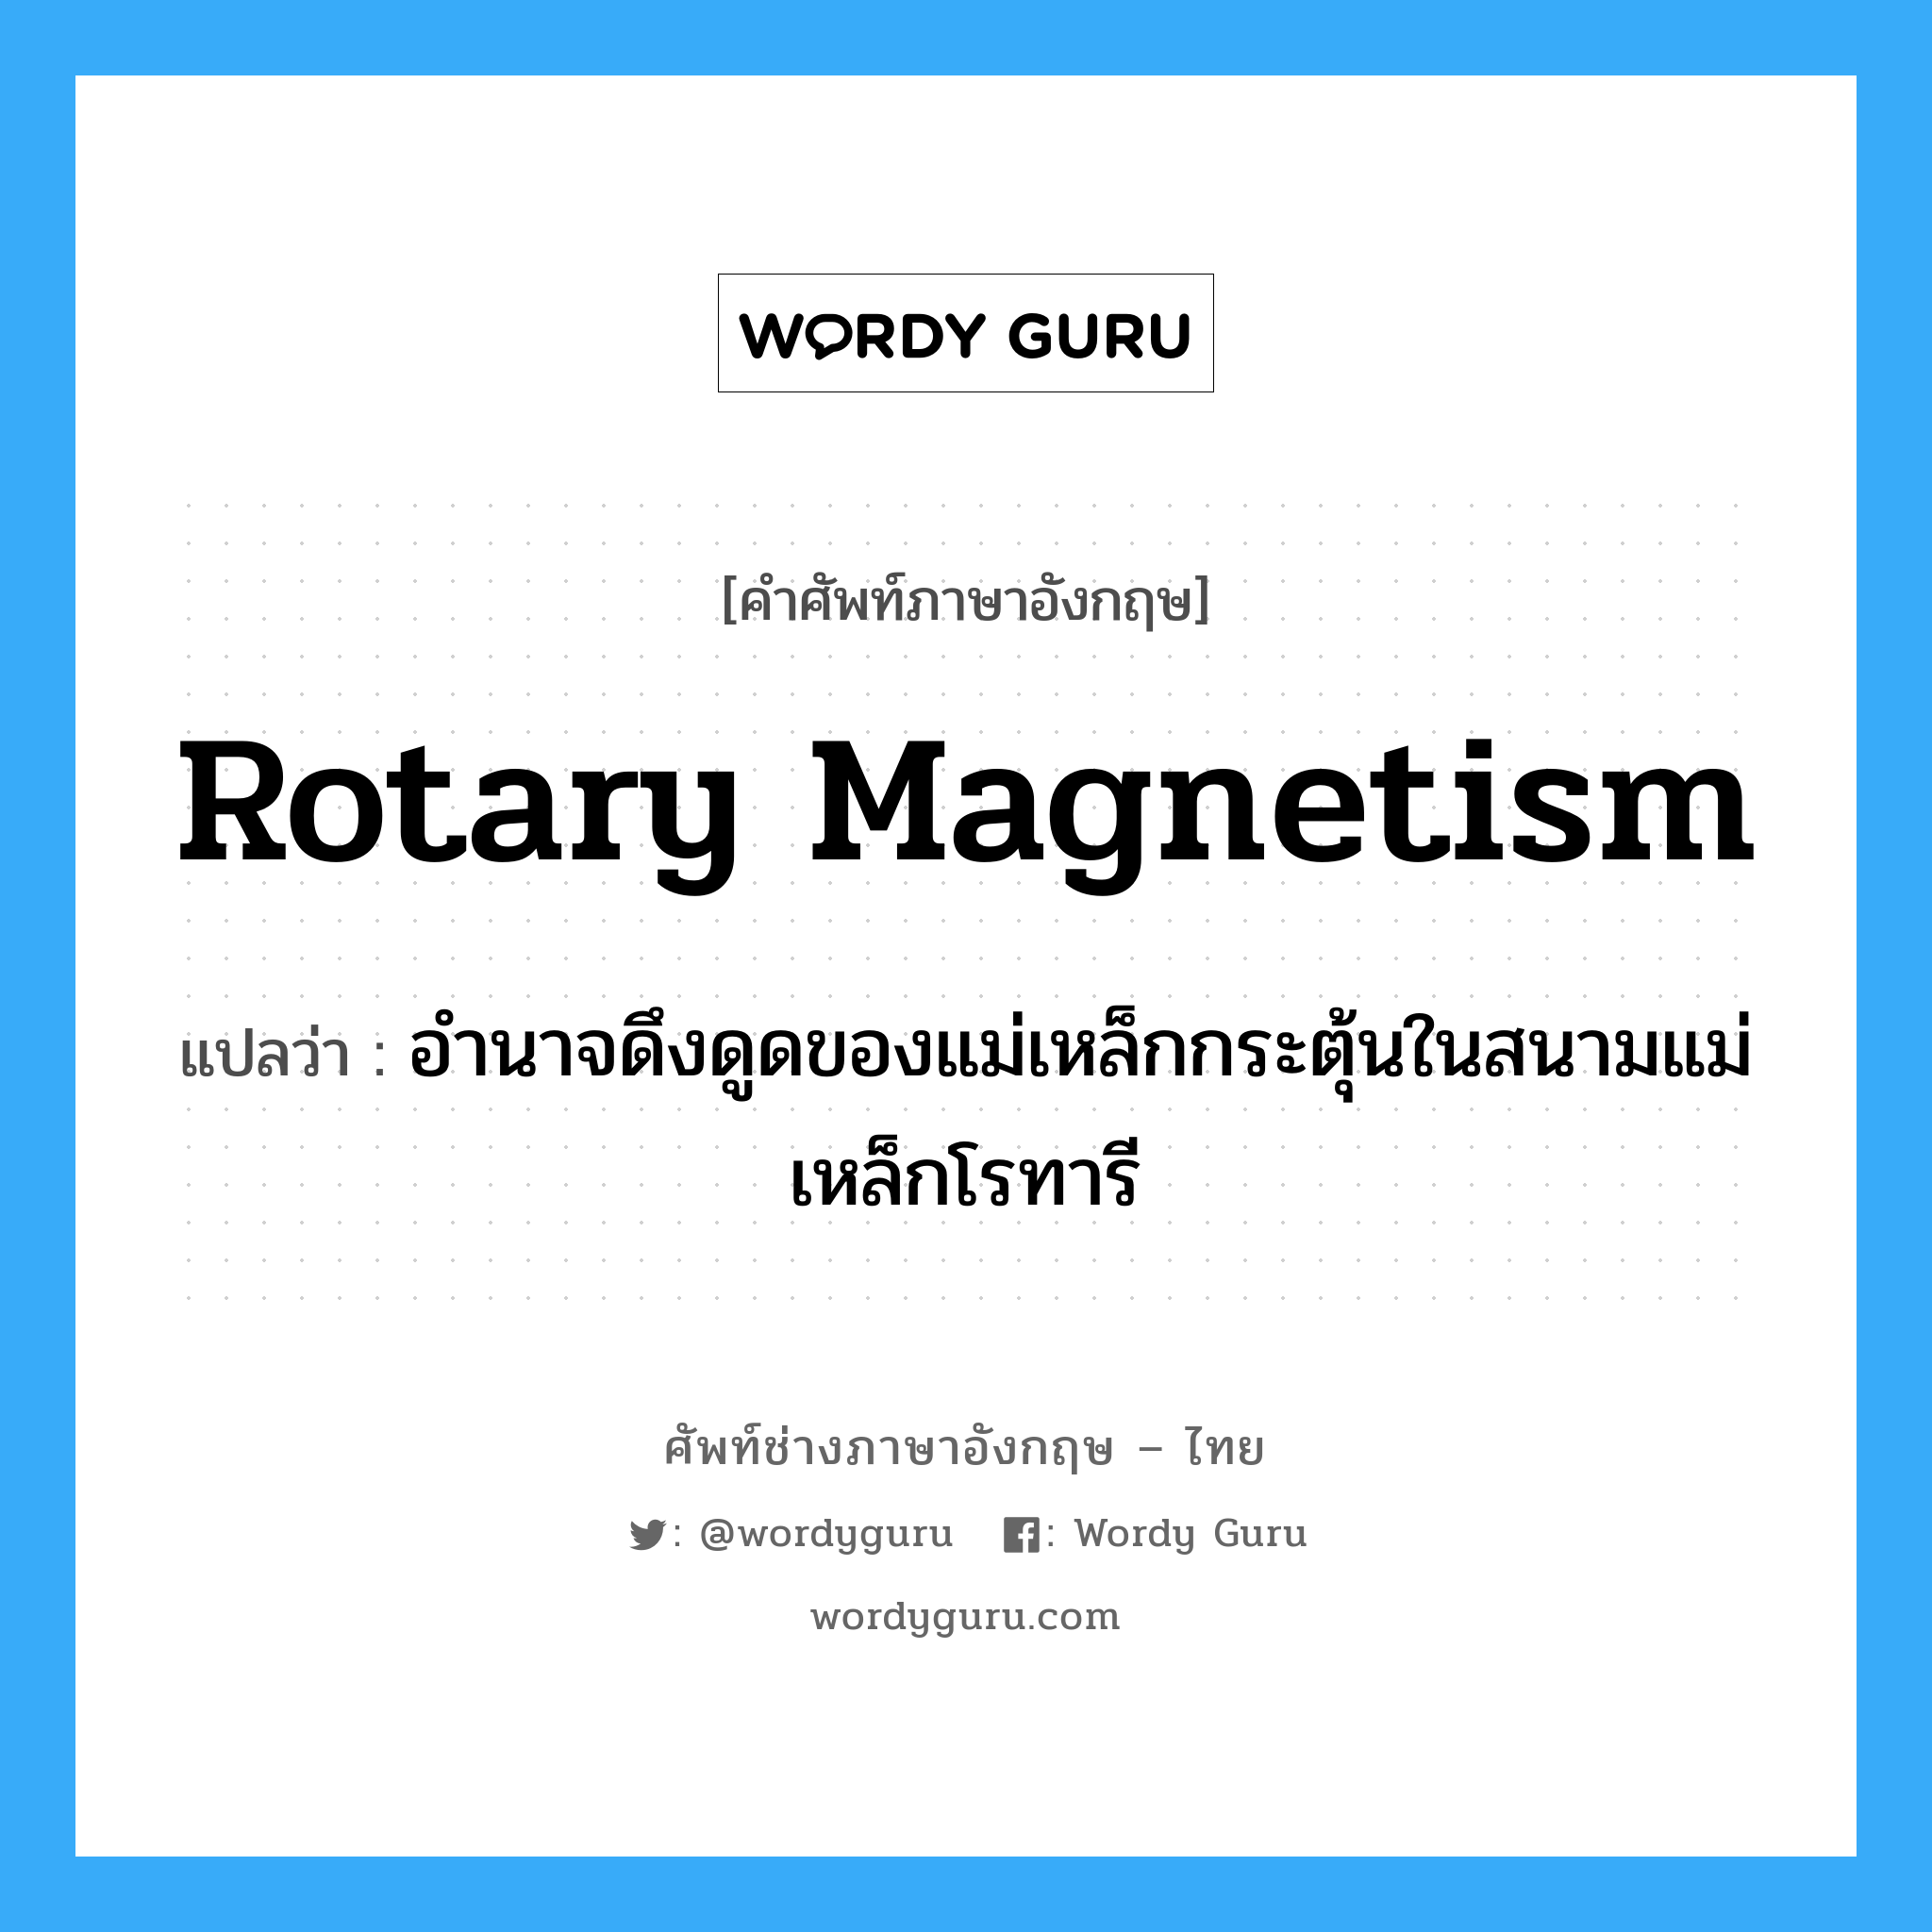 rotary magnetism แปลว่า?, คำศัพท์ช่างภาษาอังกฤษ - ไทย rotary magnetism คำศัพท์ภาษาอังกฤษ rotary magnetism แปลว่า อำนาจดึงดูดของแม่เหล็กกระตุ้นในสนามแม่เหล็กโรทารี